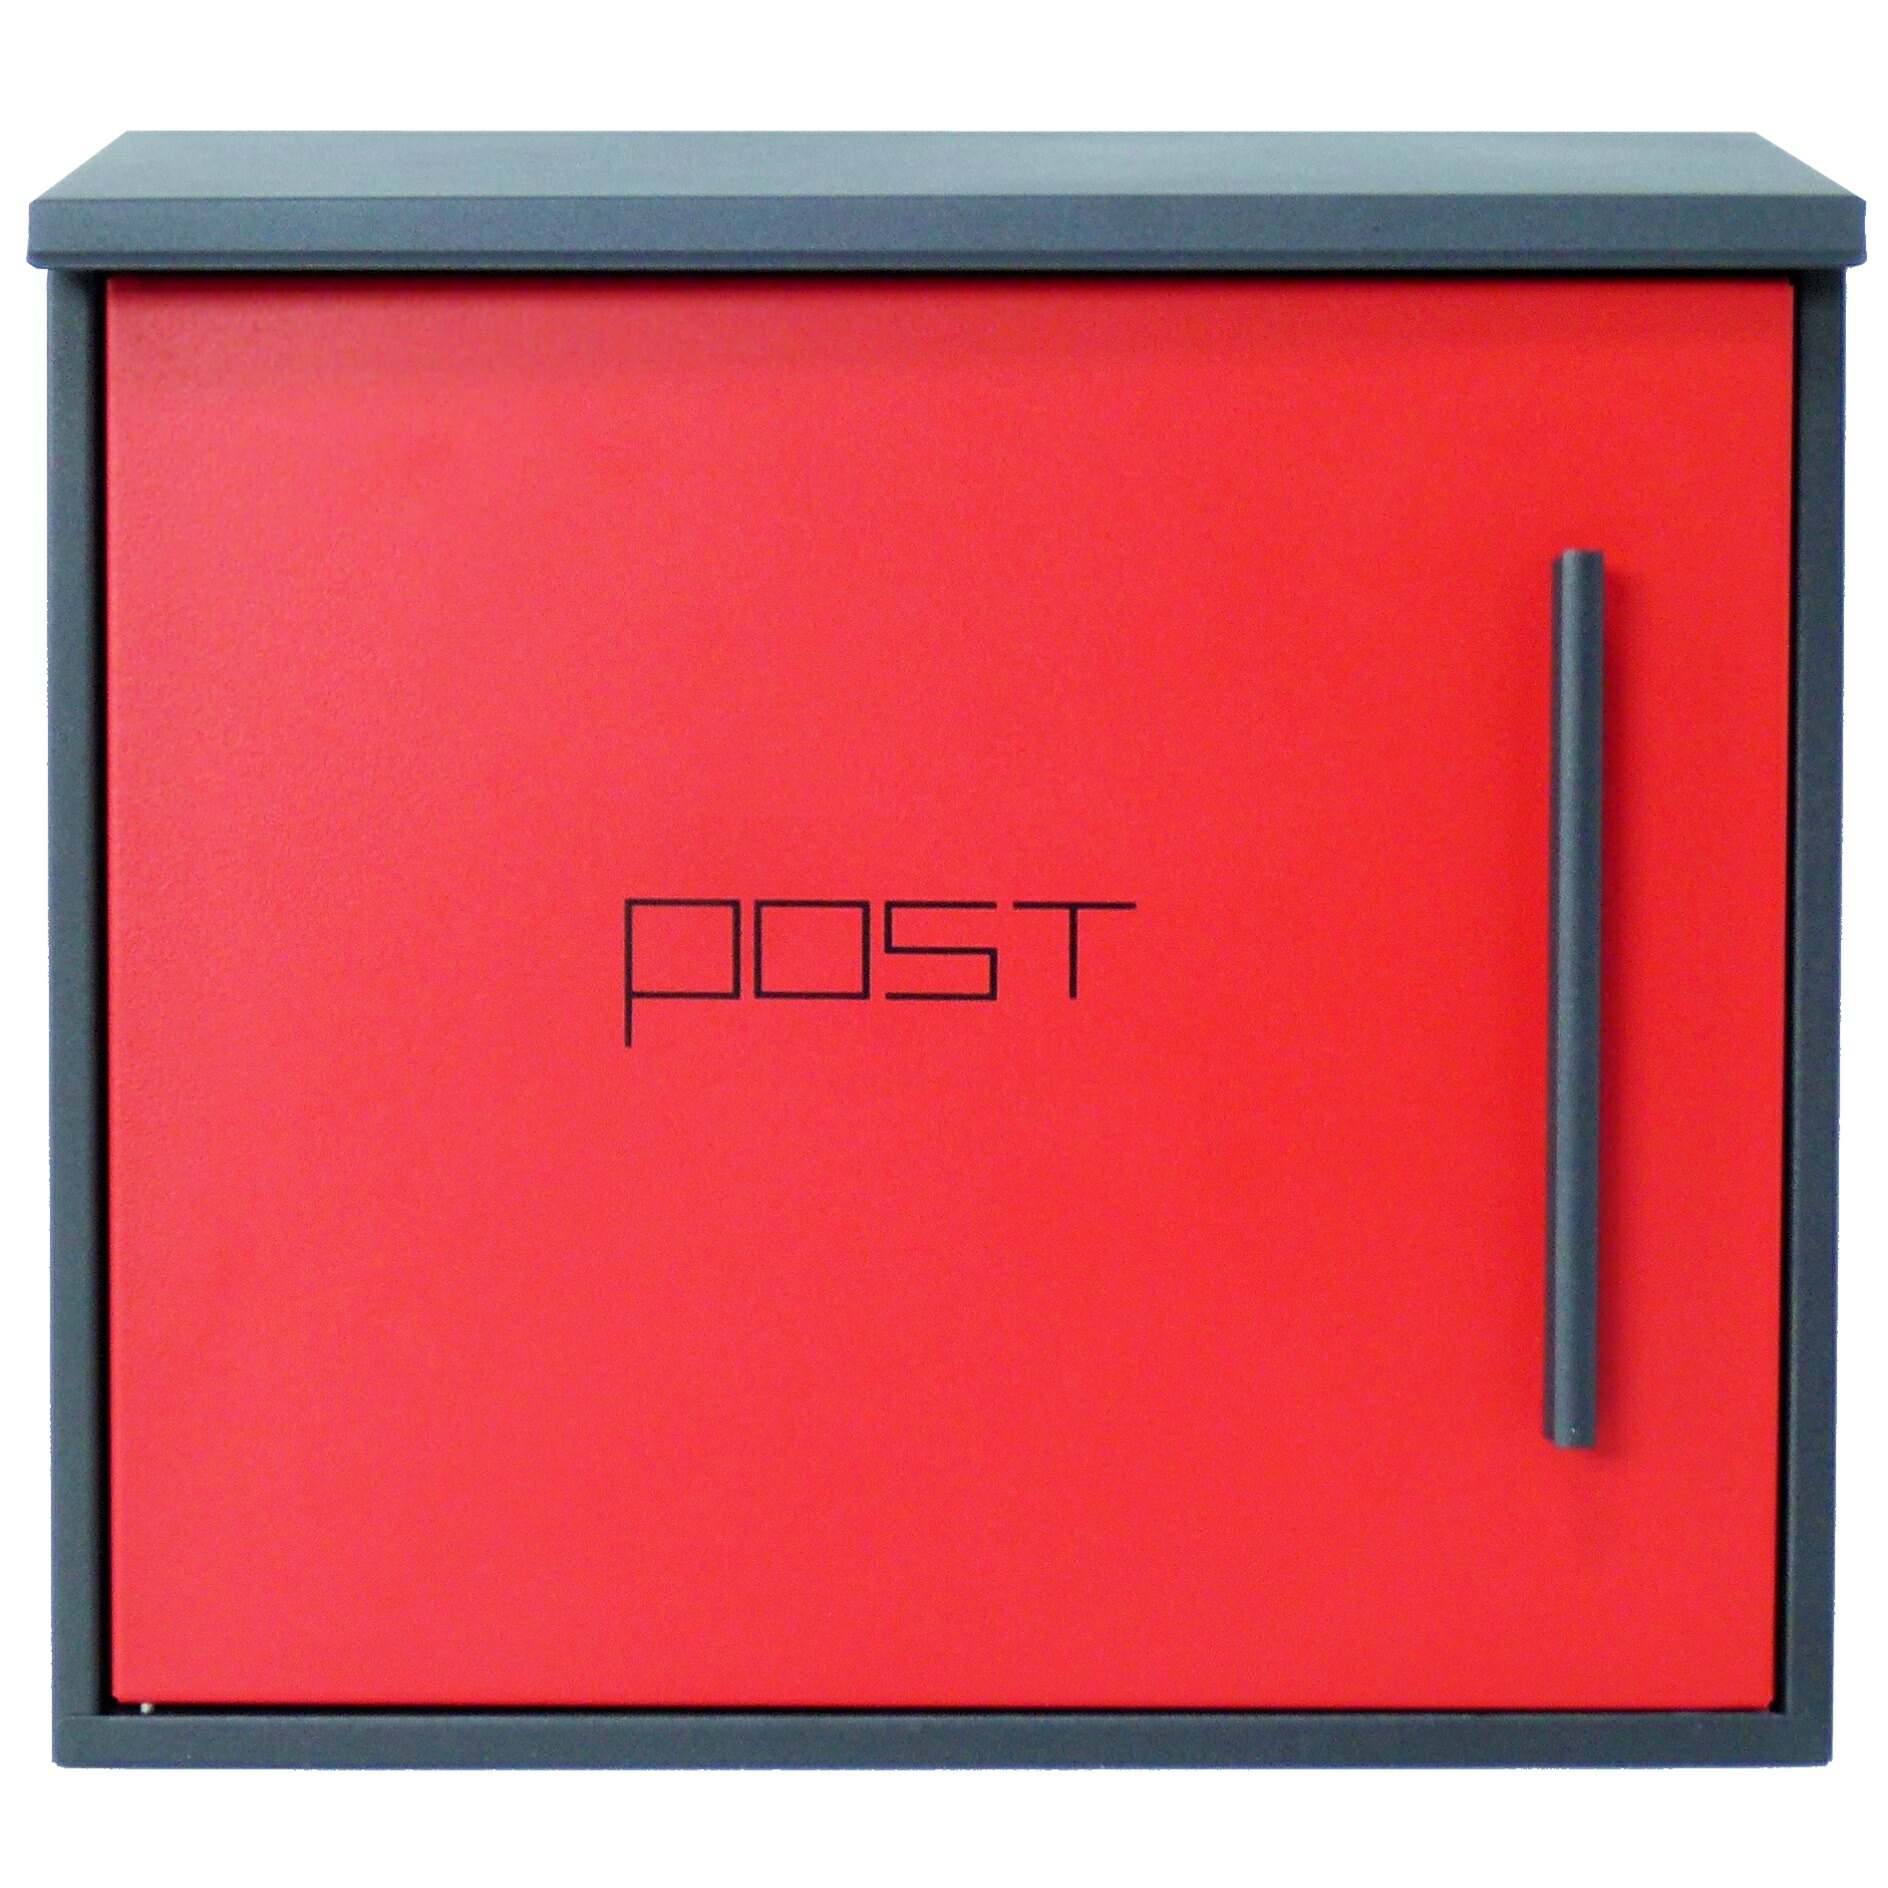 【郵便 ポスト】壁掛け 鍵付き おしゃれ 人気 郵便受け メールボックス レッド赤色ポストpm203